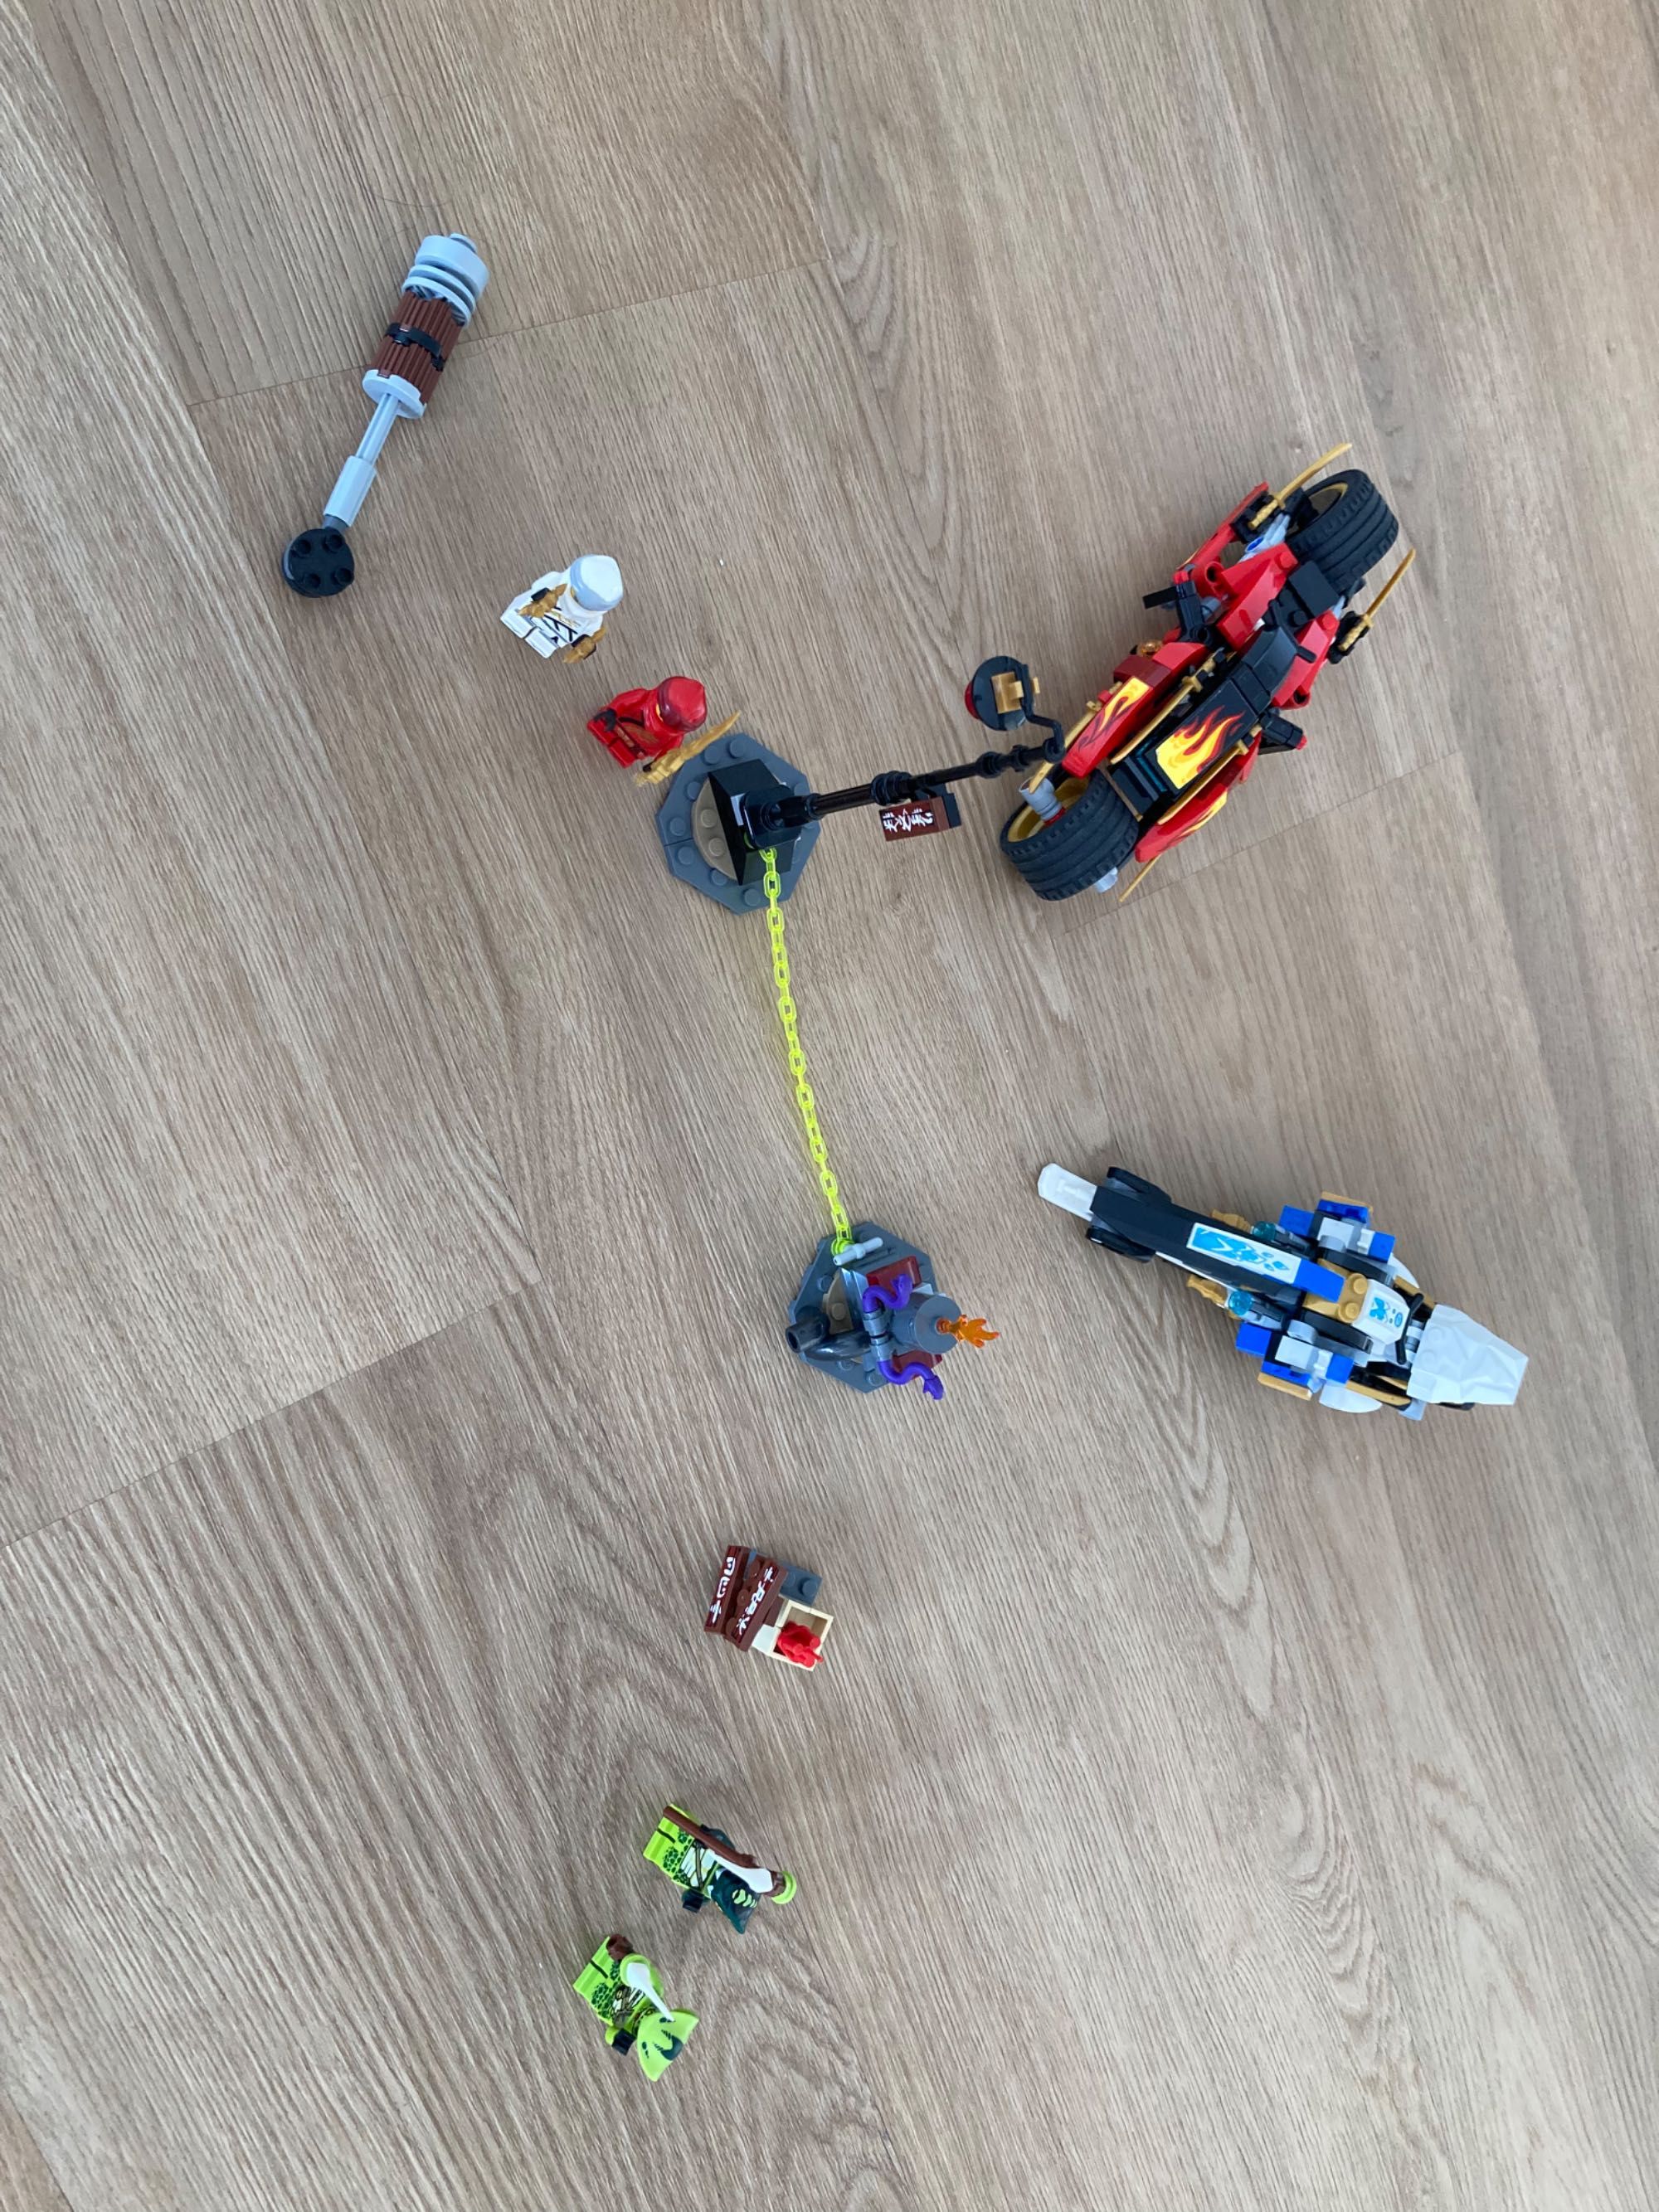 Lego motos vários personagens